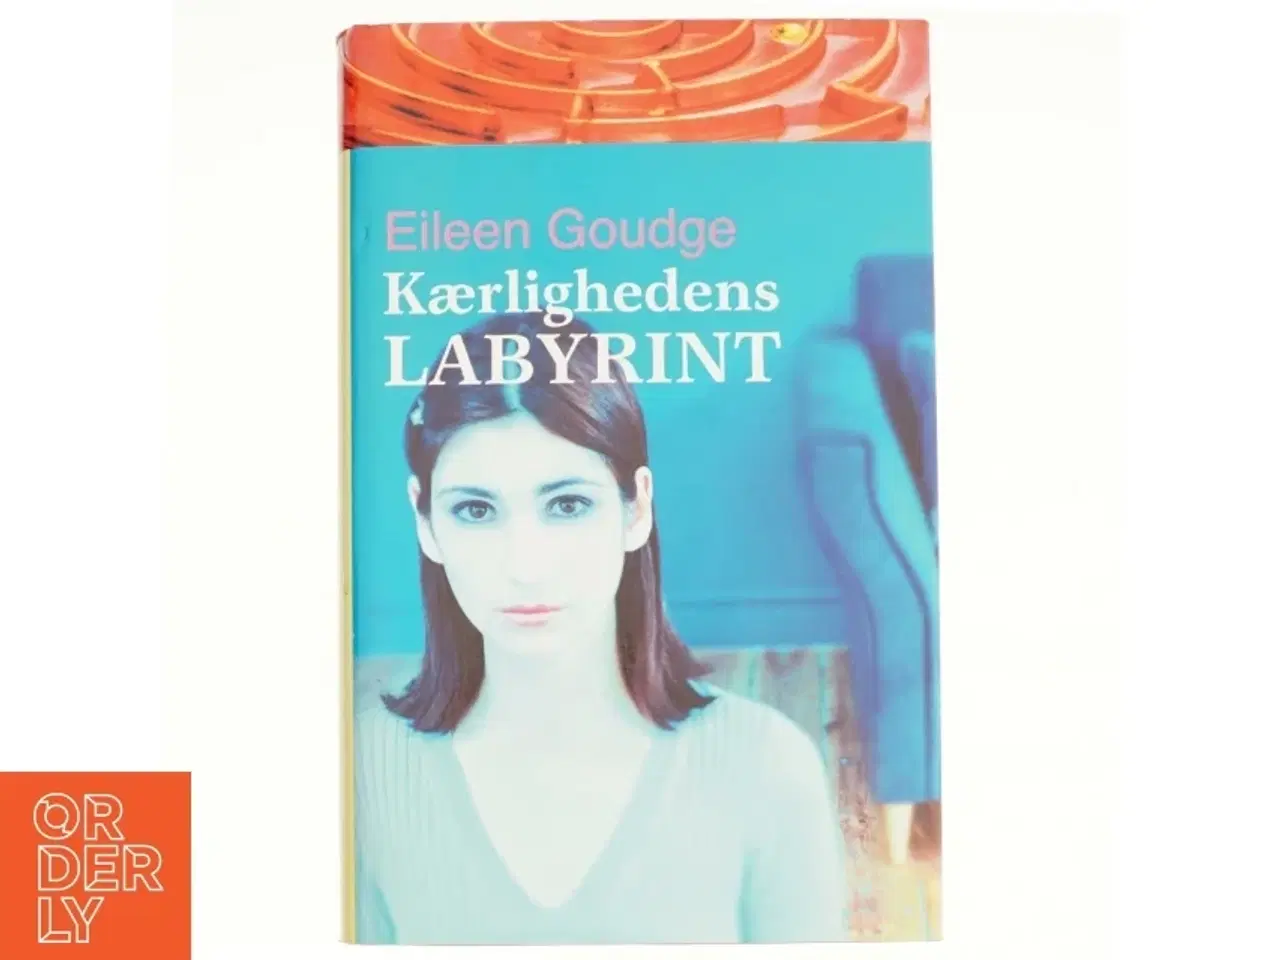 Billede 1 - Kærlighedens labyrint af Eileen Goudge (Bog)